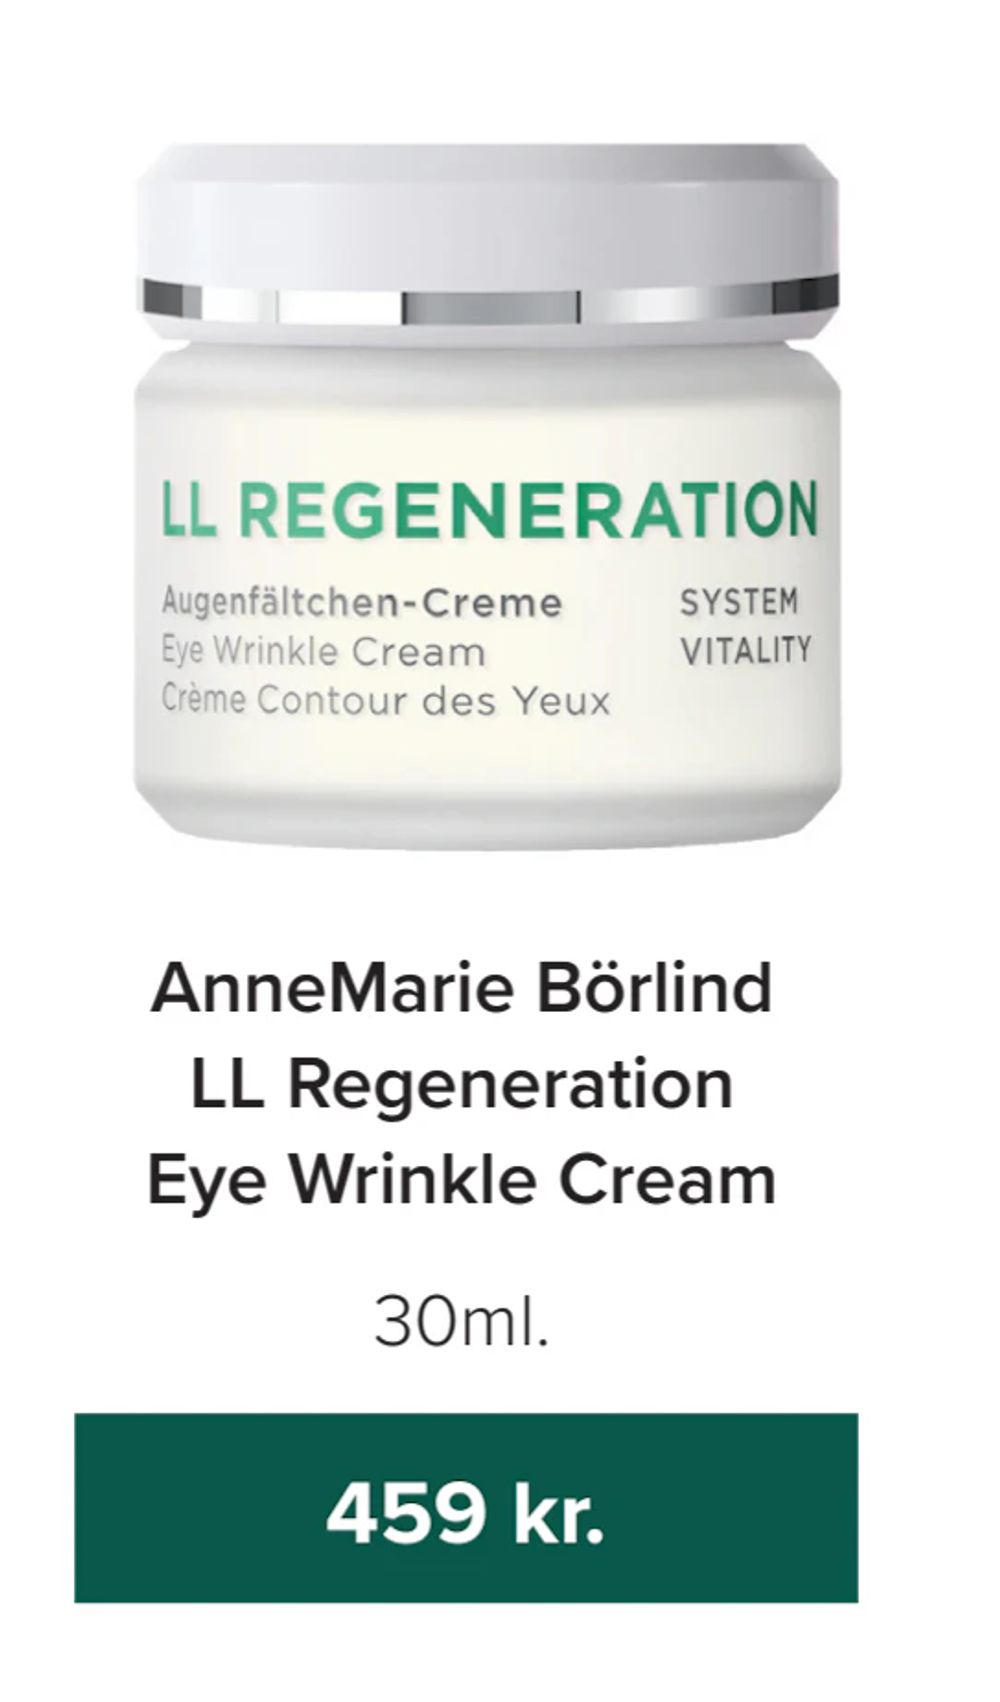 Tilbud på AnneMarie Börlind LL Regeneration Eye Wrinkle Cream fra Helsemin til 459 kr.